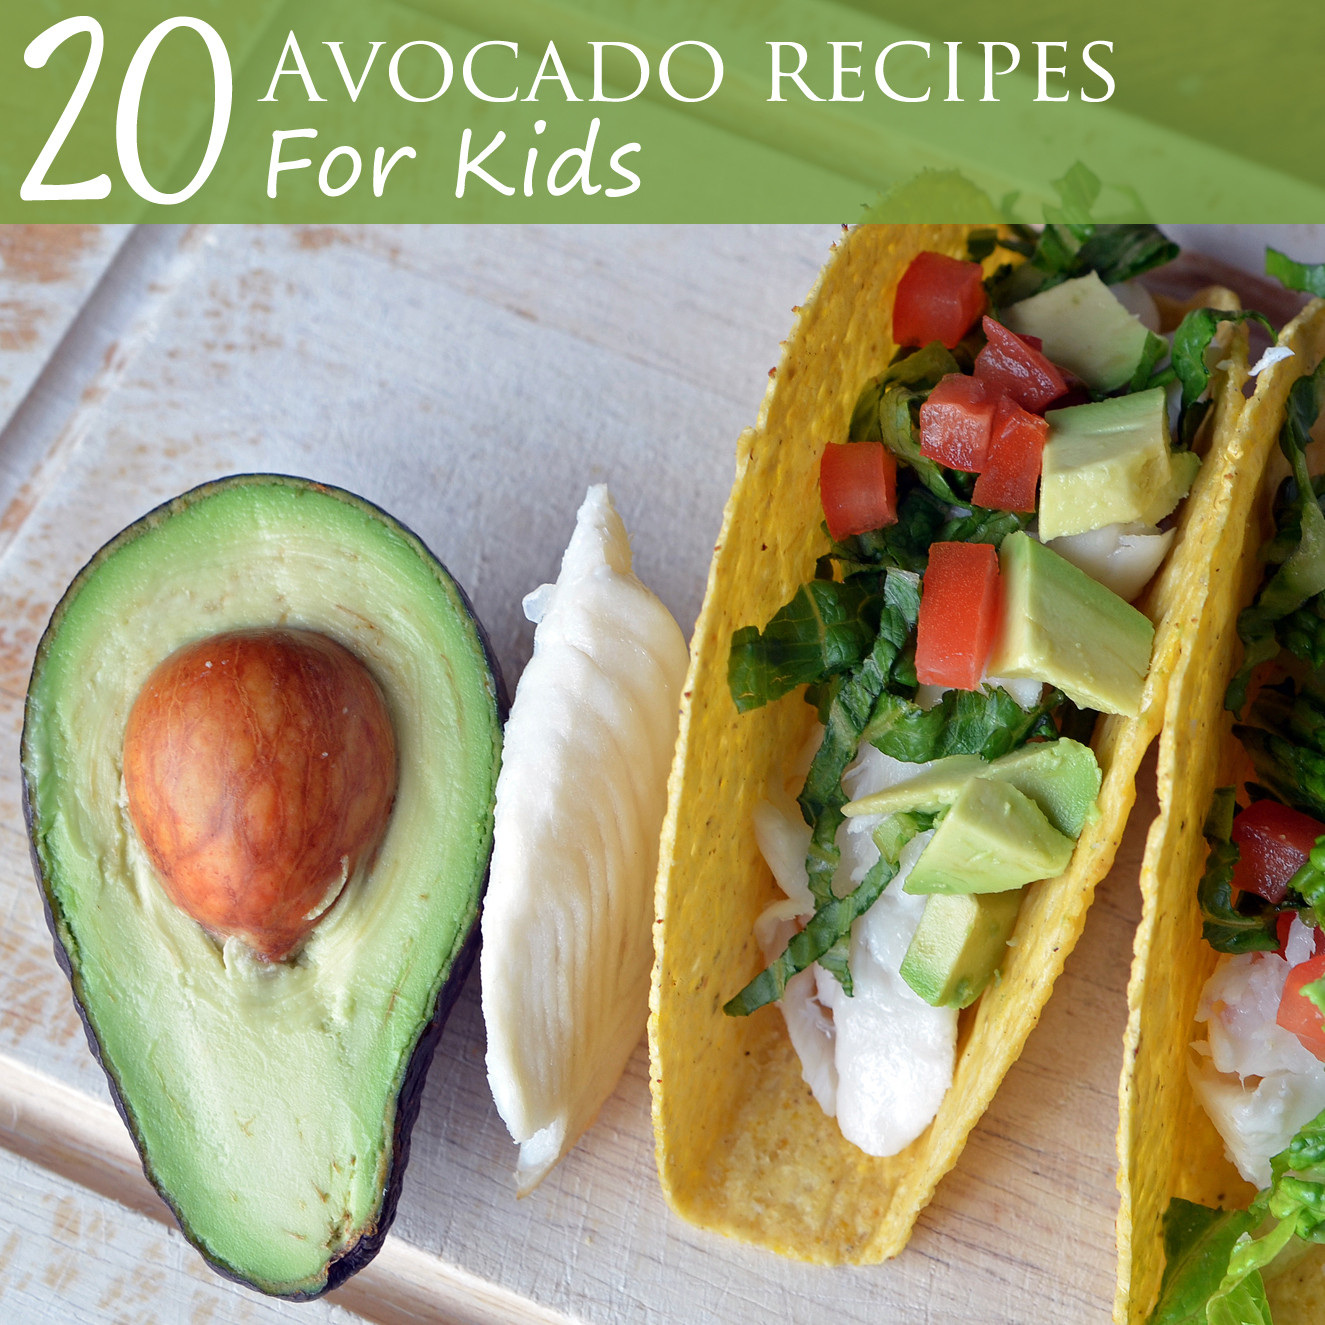 Healthy Recipes With Avocado
 20 Avocado Recipes for Kids